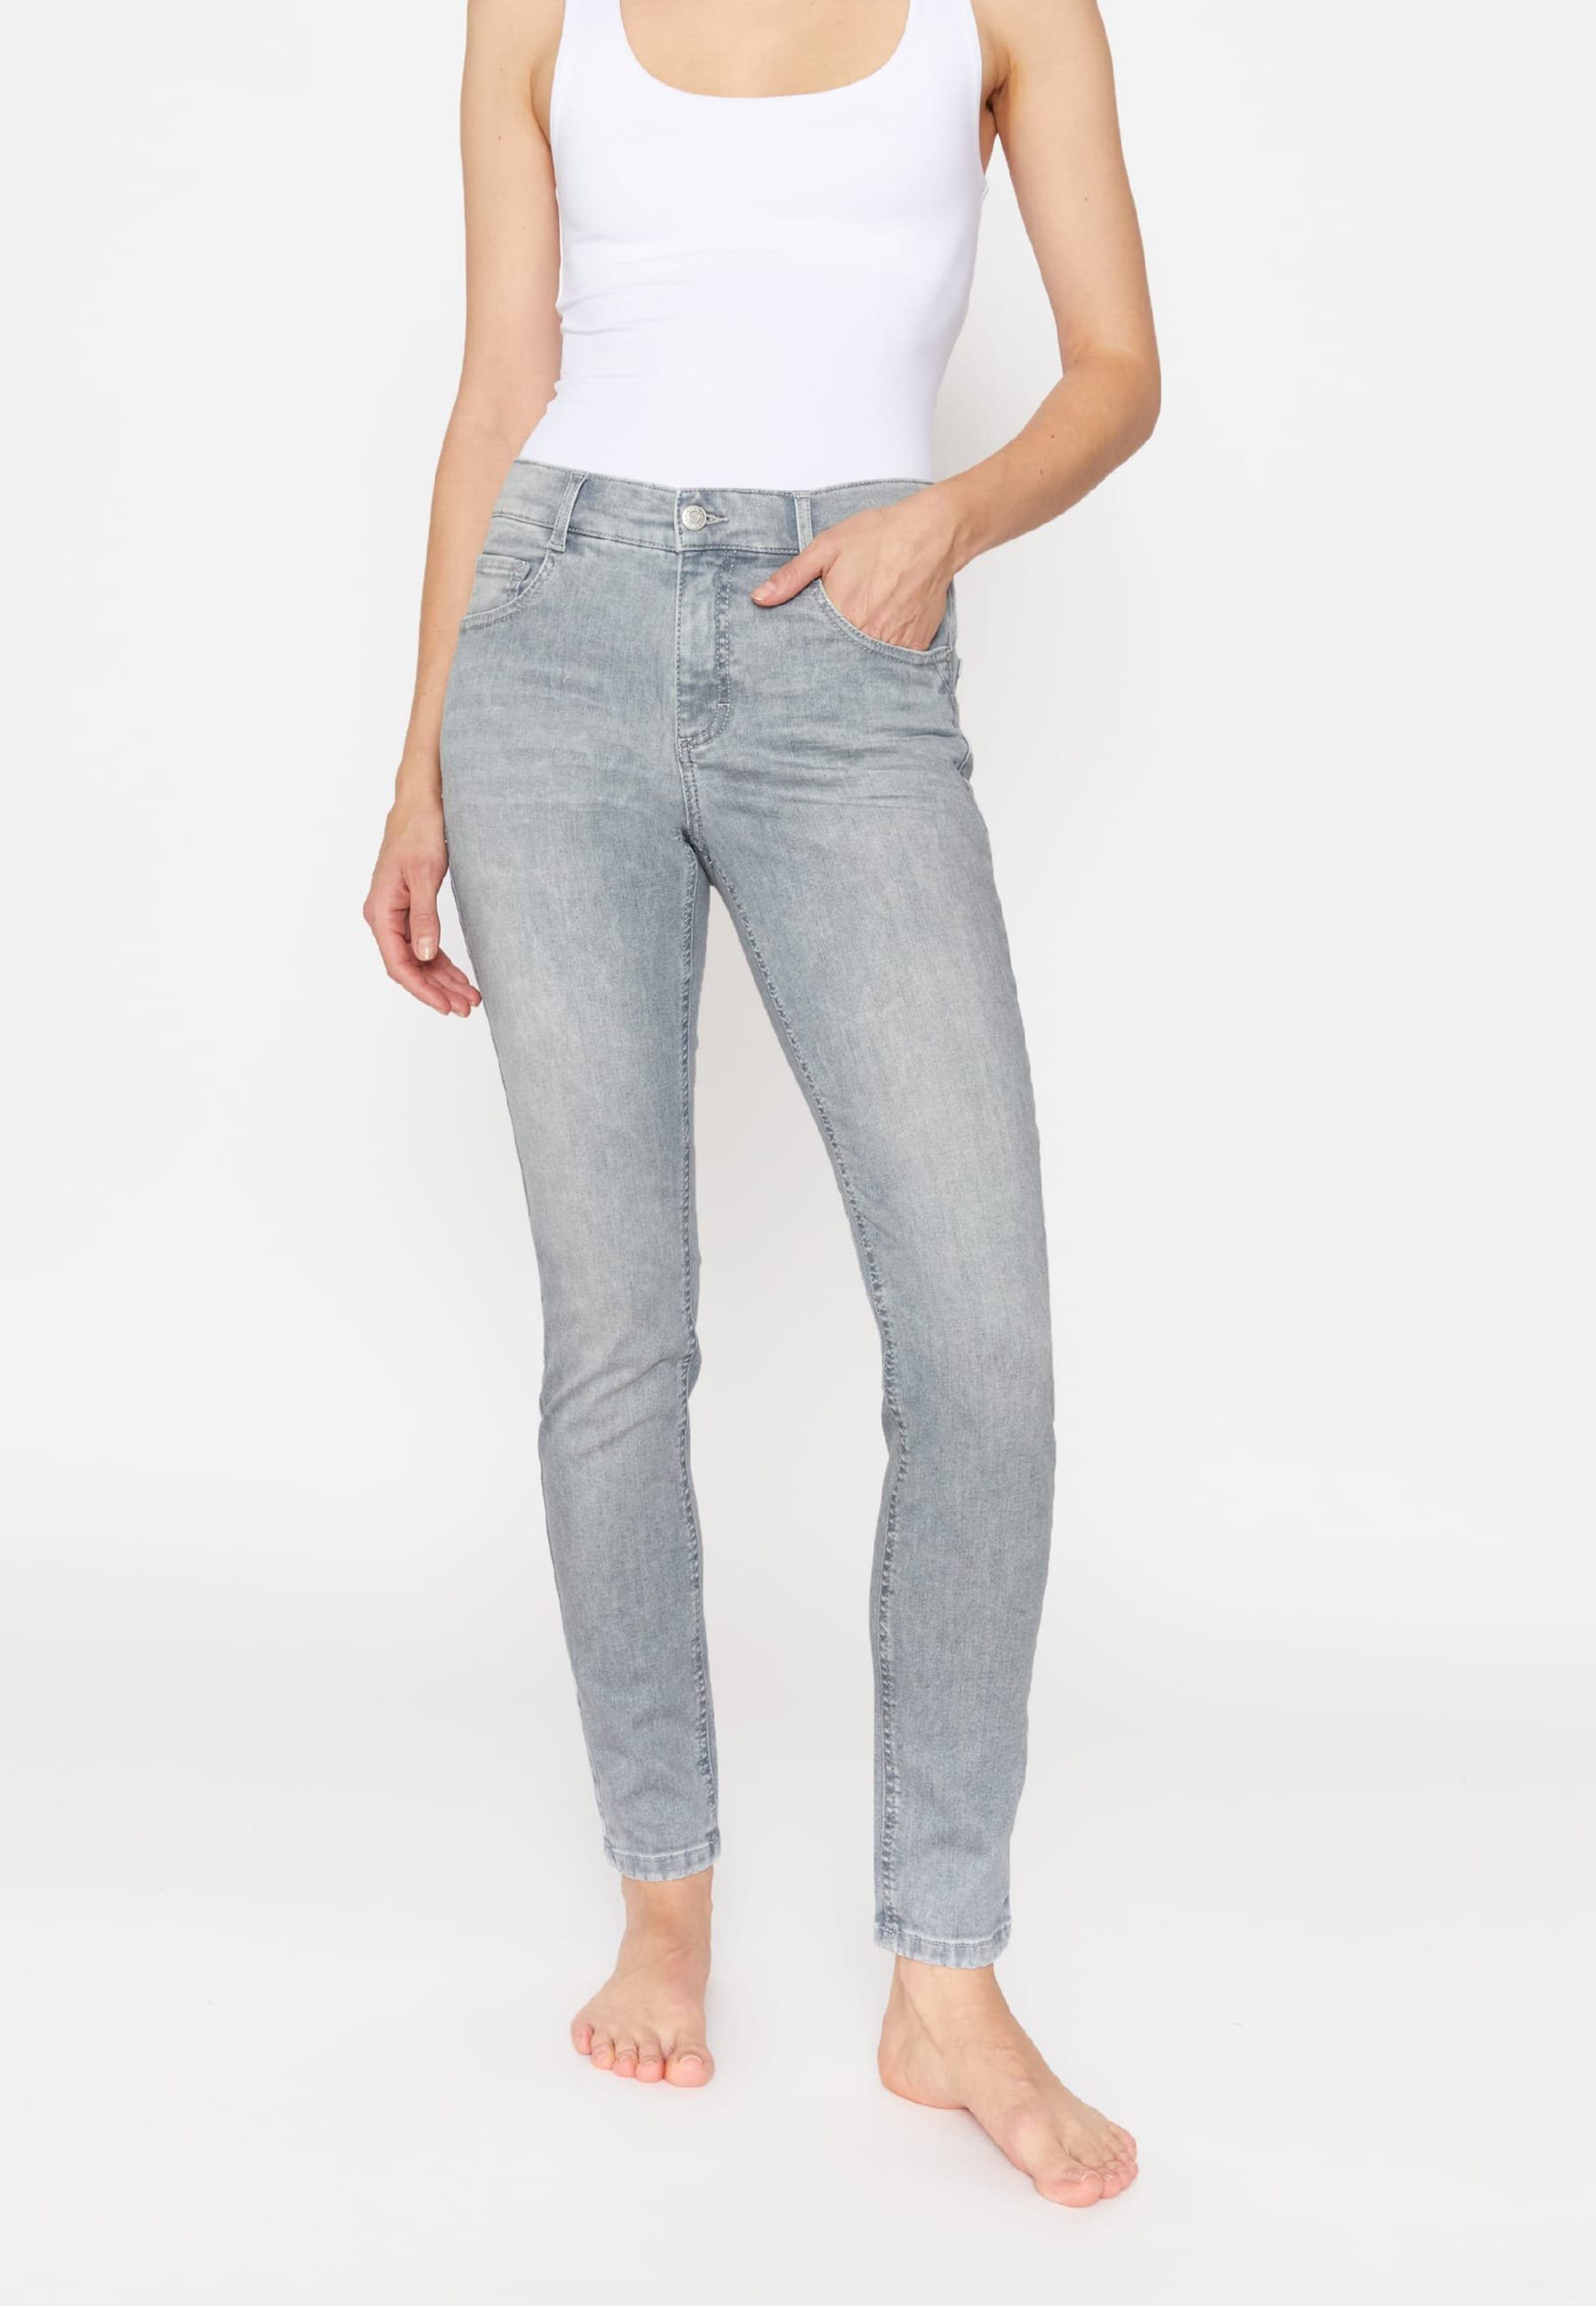 Graue ANGELS Jeans für Damen online kaufen | OTTO